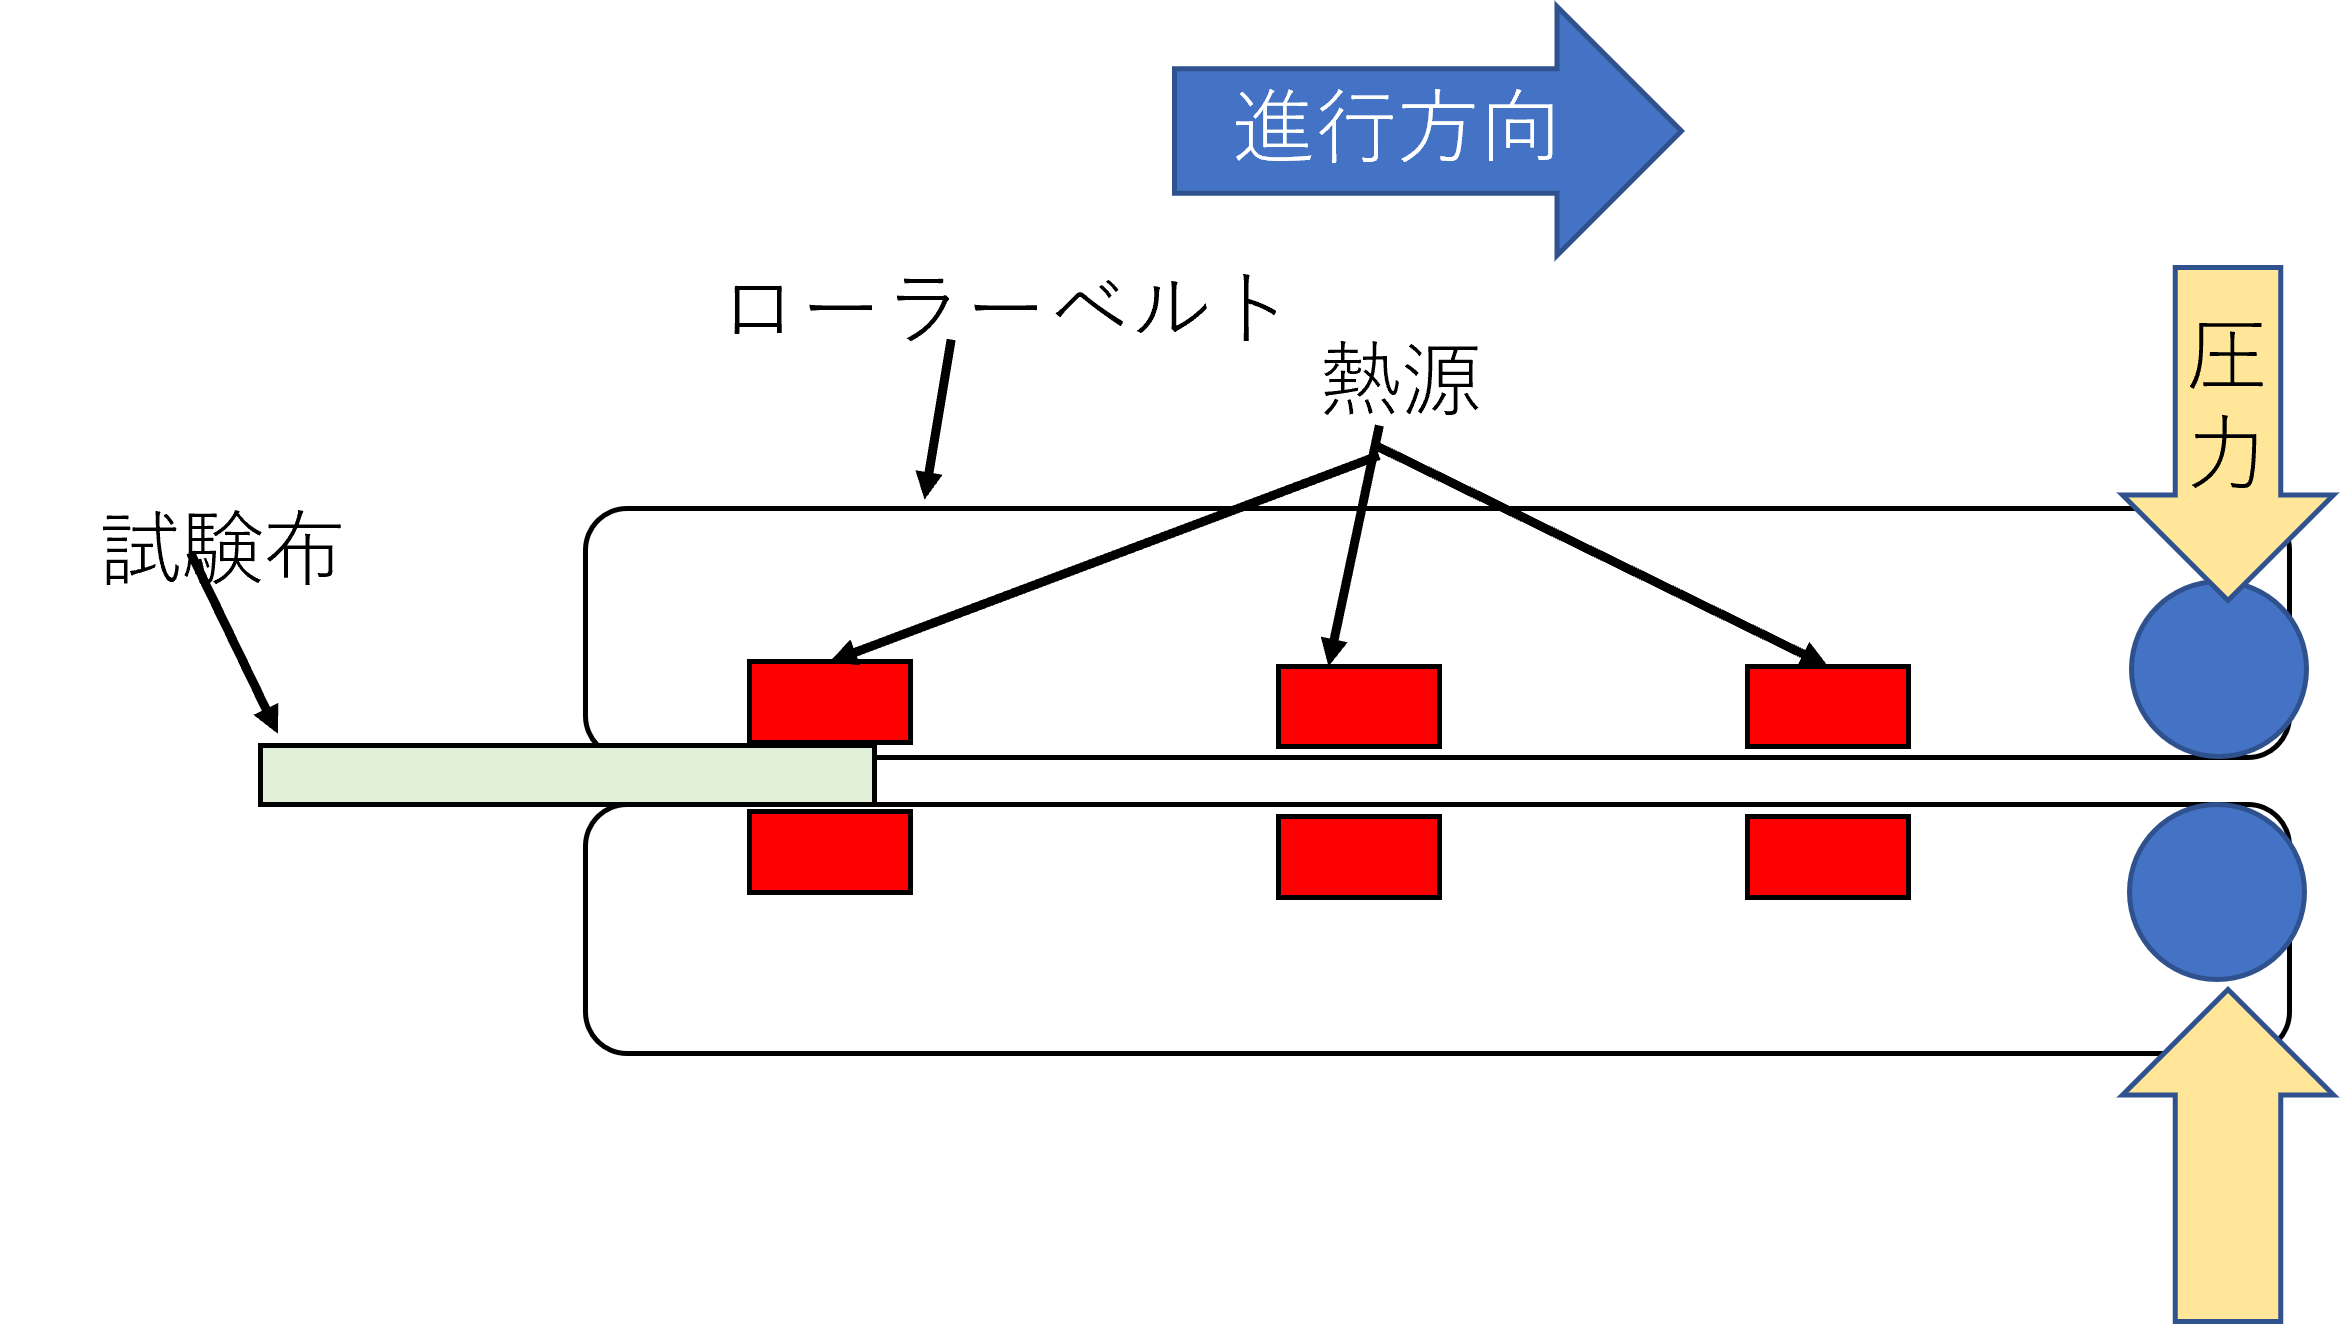 ローラープレス機模式図